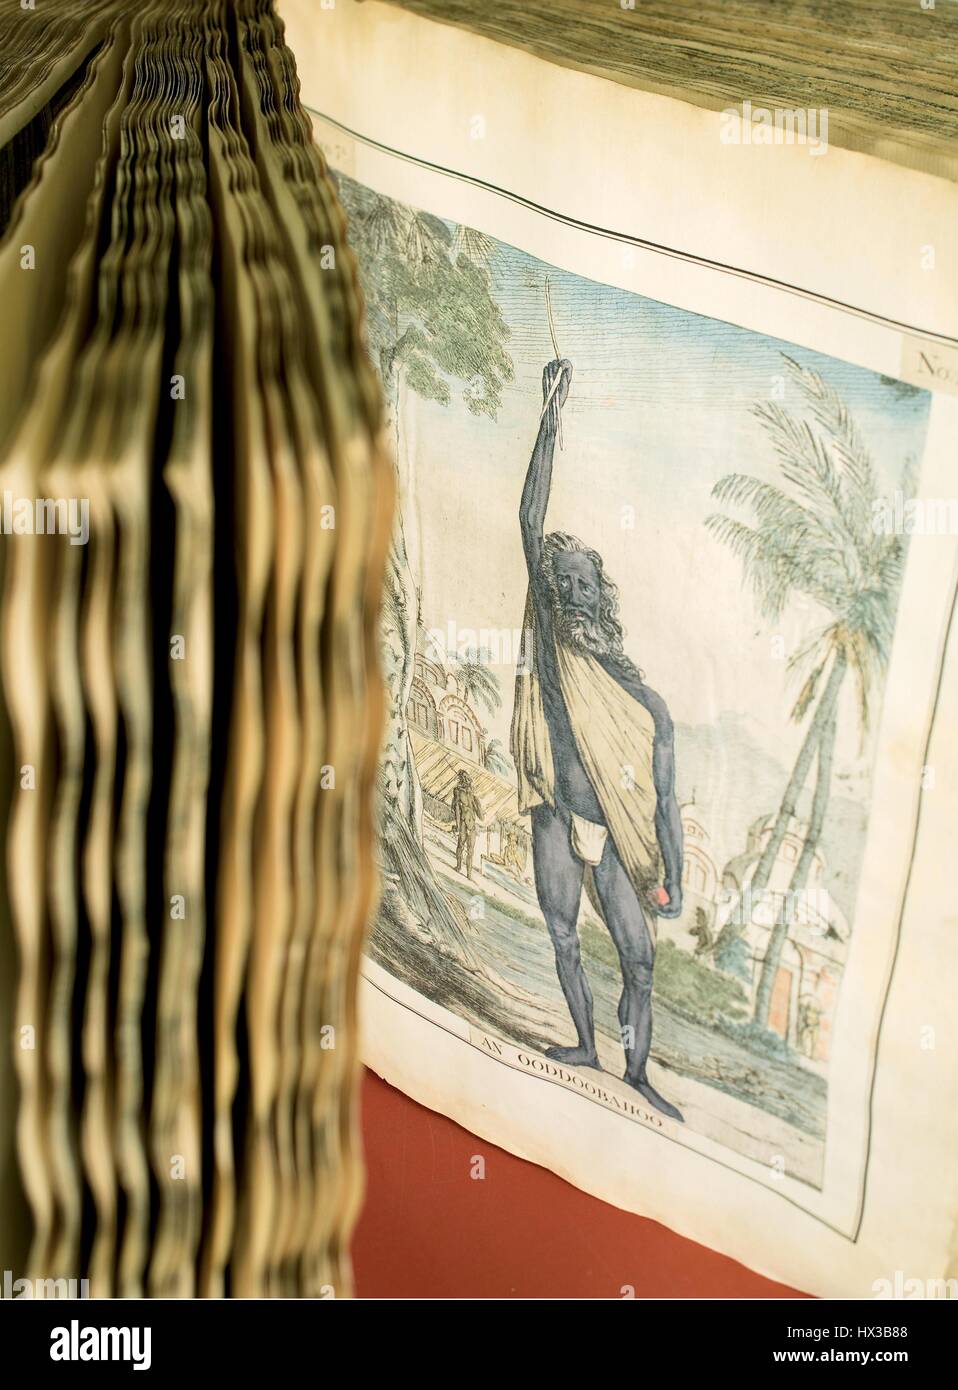 Das Buch "Collection von zweihundert und fünfzig farbigen Radierungen" von Francois Balthazar Solvyns (1760-1824) richtet sich an einer Seite mit einer farbigen Ätzen der Asket mit seinen rechten Arm erhoben, 1796. Mit freundlicher Genehmigung National Library of Medicine. Stockfoto